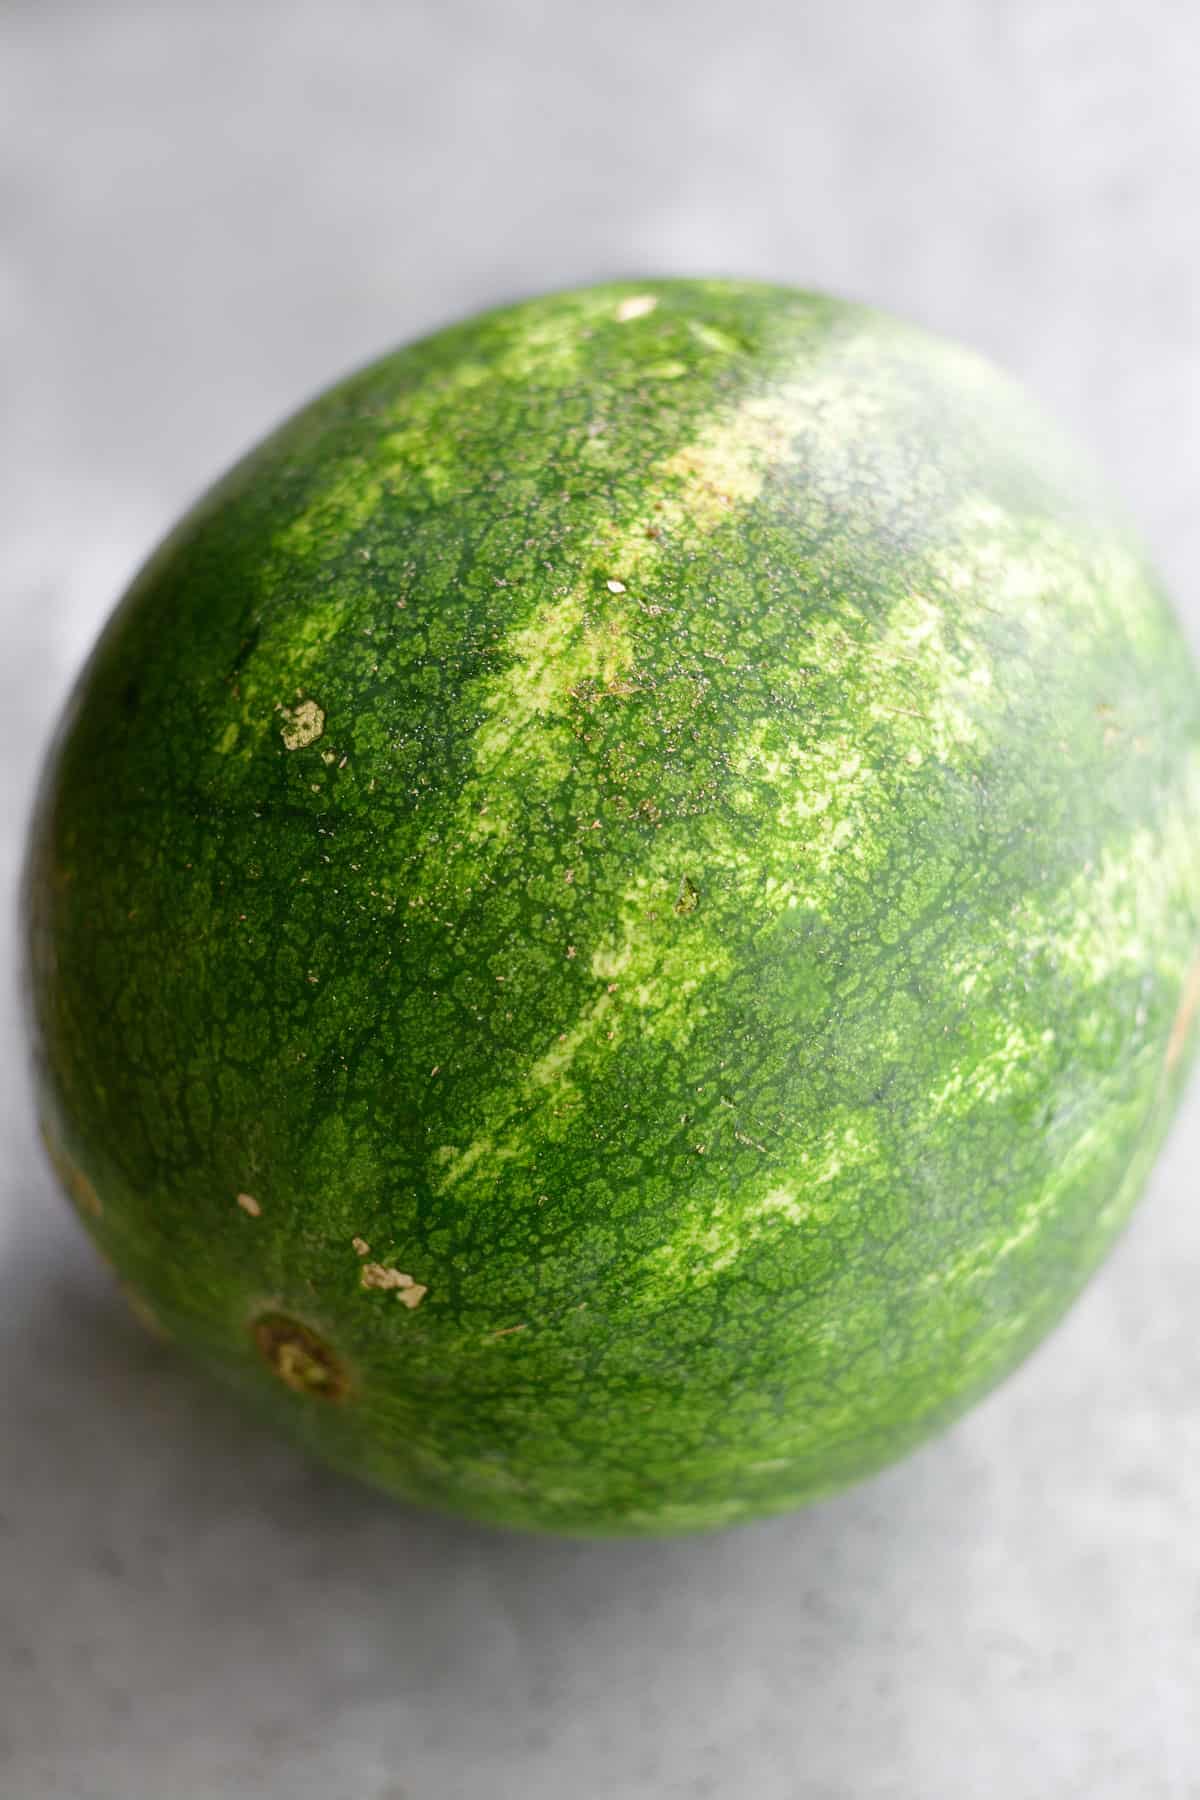 A whole ripe watermelon.